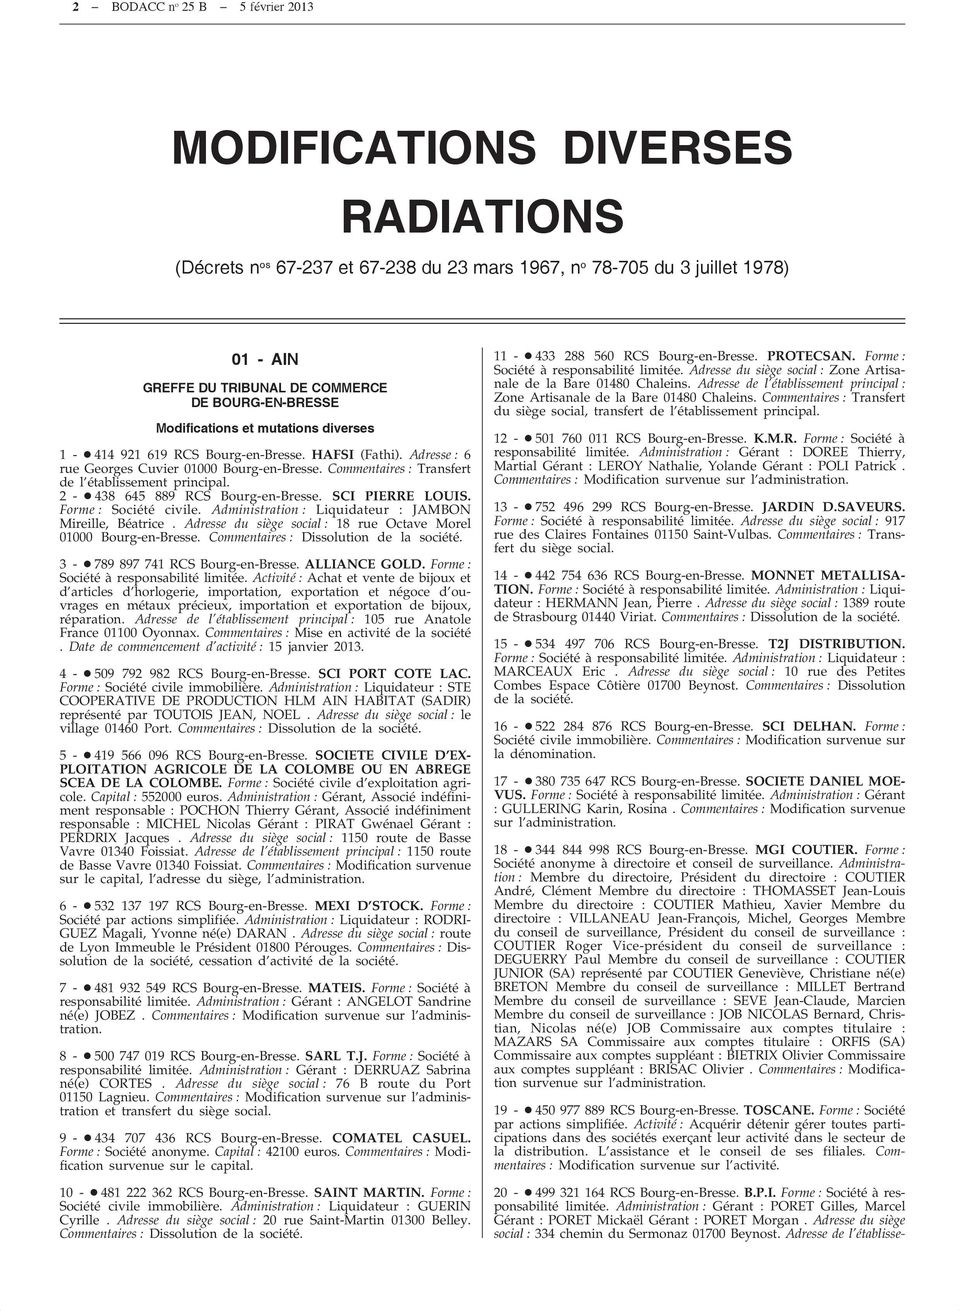 Bodacc Bulletin Officiel Des Annexe Au Journal Officiel De La Republique Francaise Bodacc C Modifications Diverses Radiations Pdf Free Download